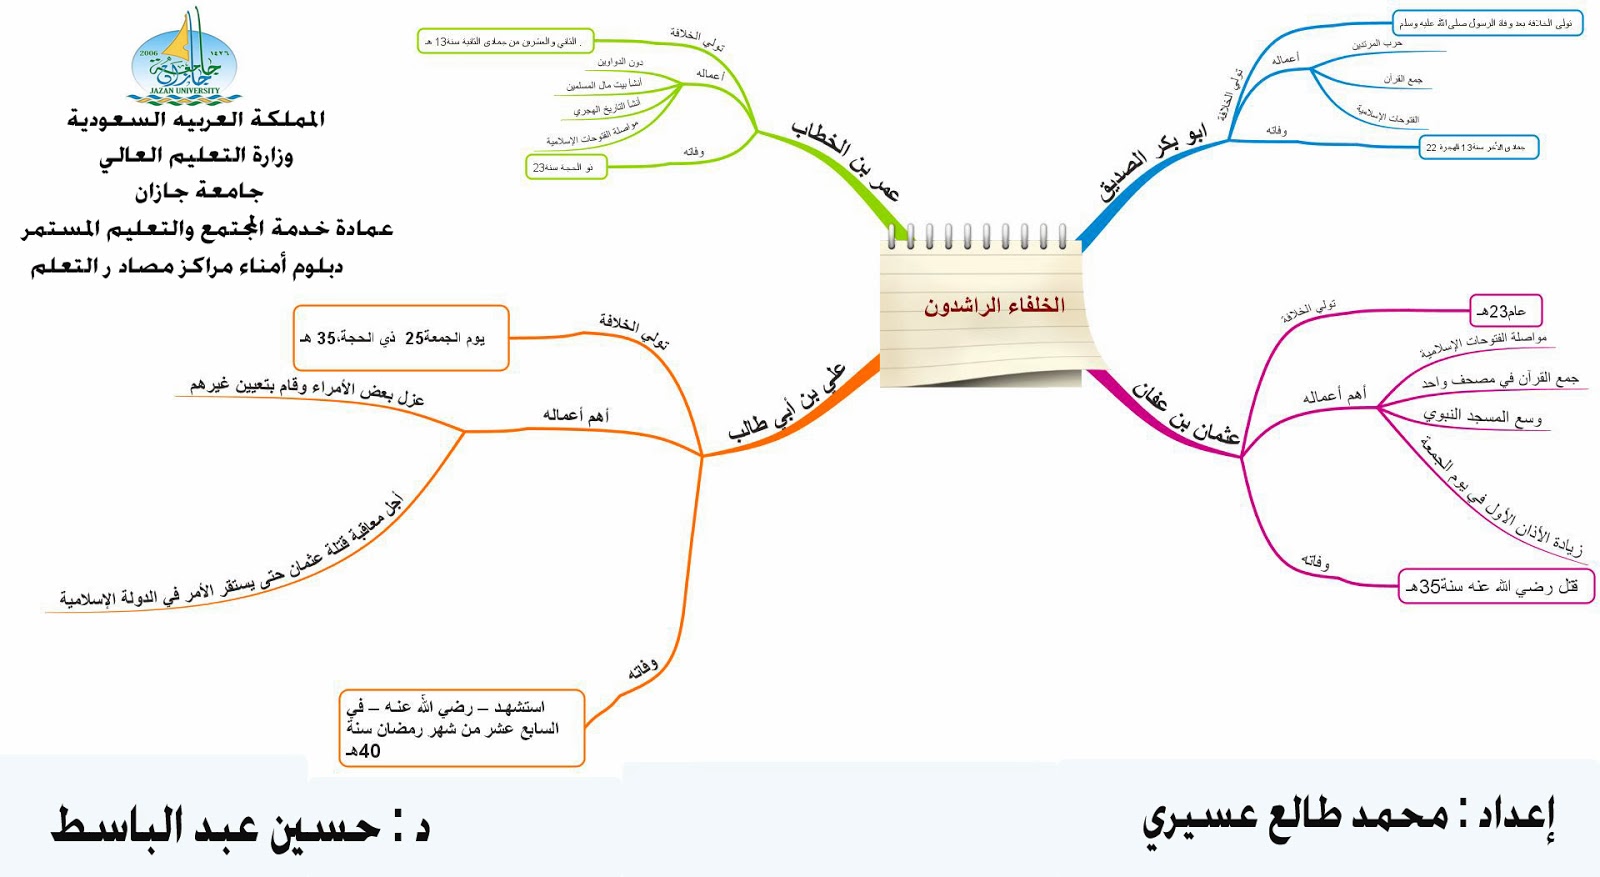 تصميم خريطة مفاهيم الخلفاء الراشدين